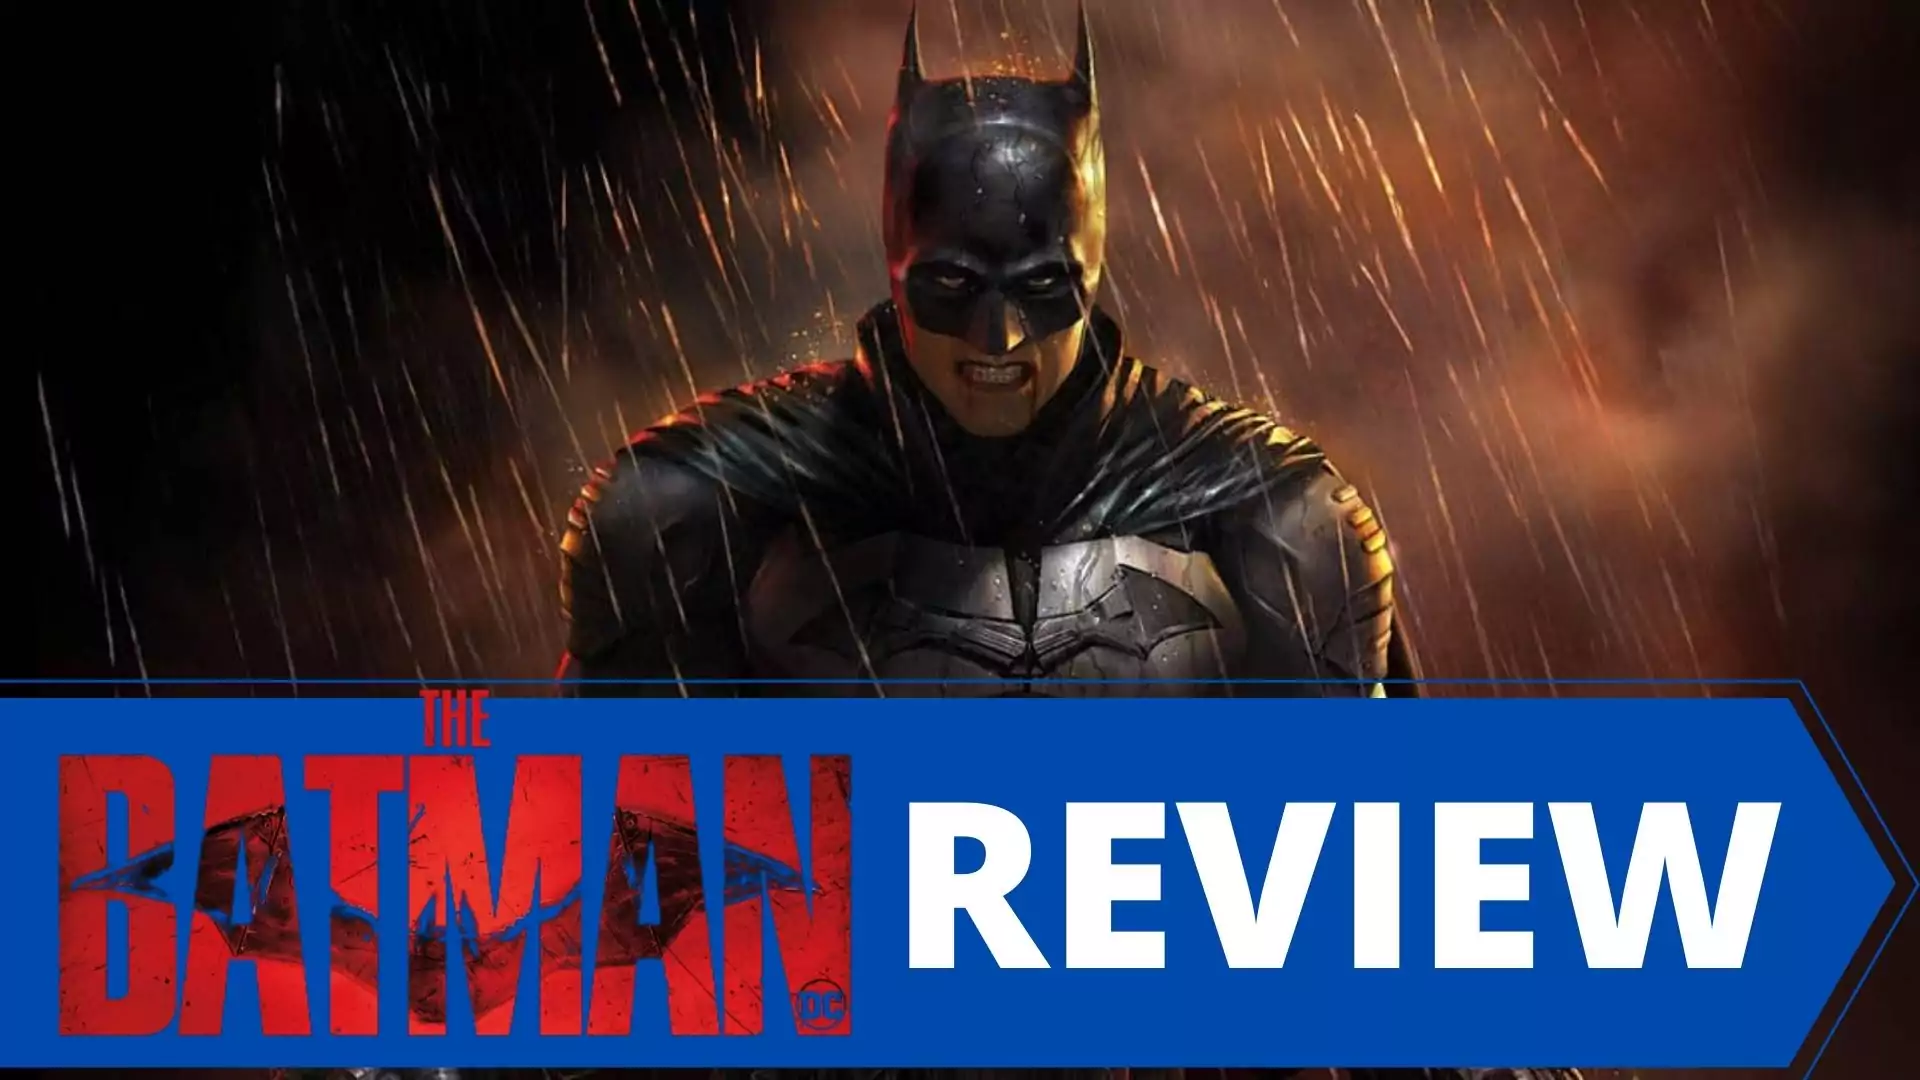 The Batman Review | The Batman 2022 Review